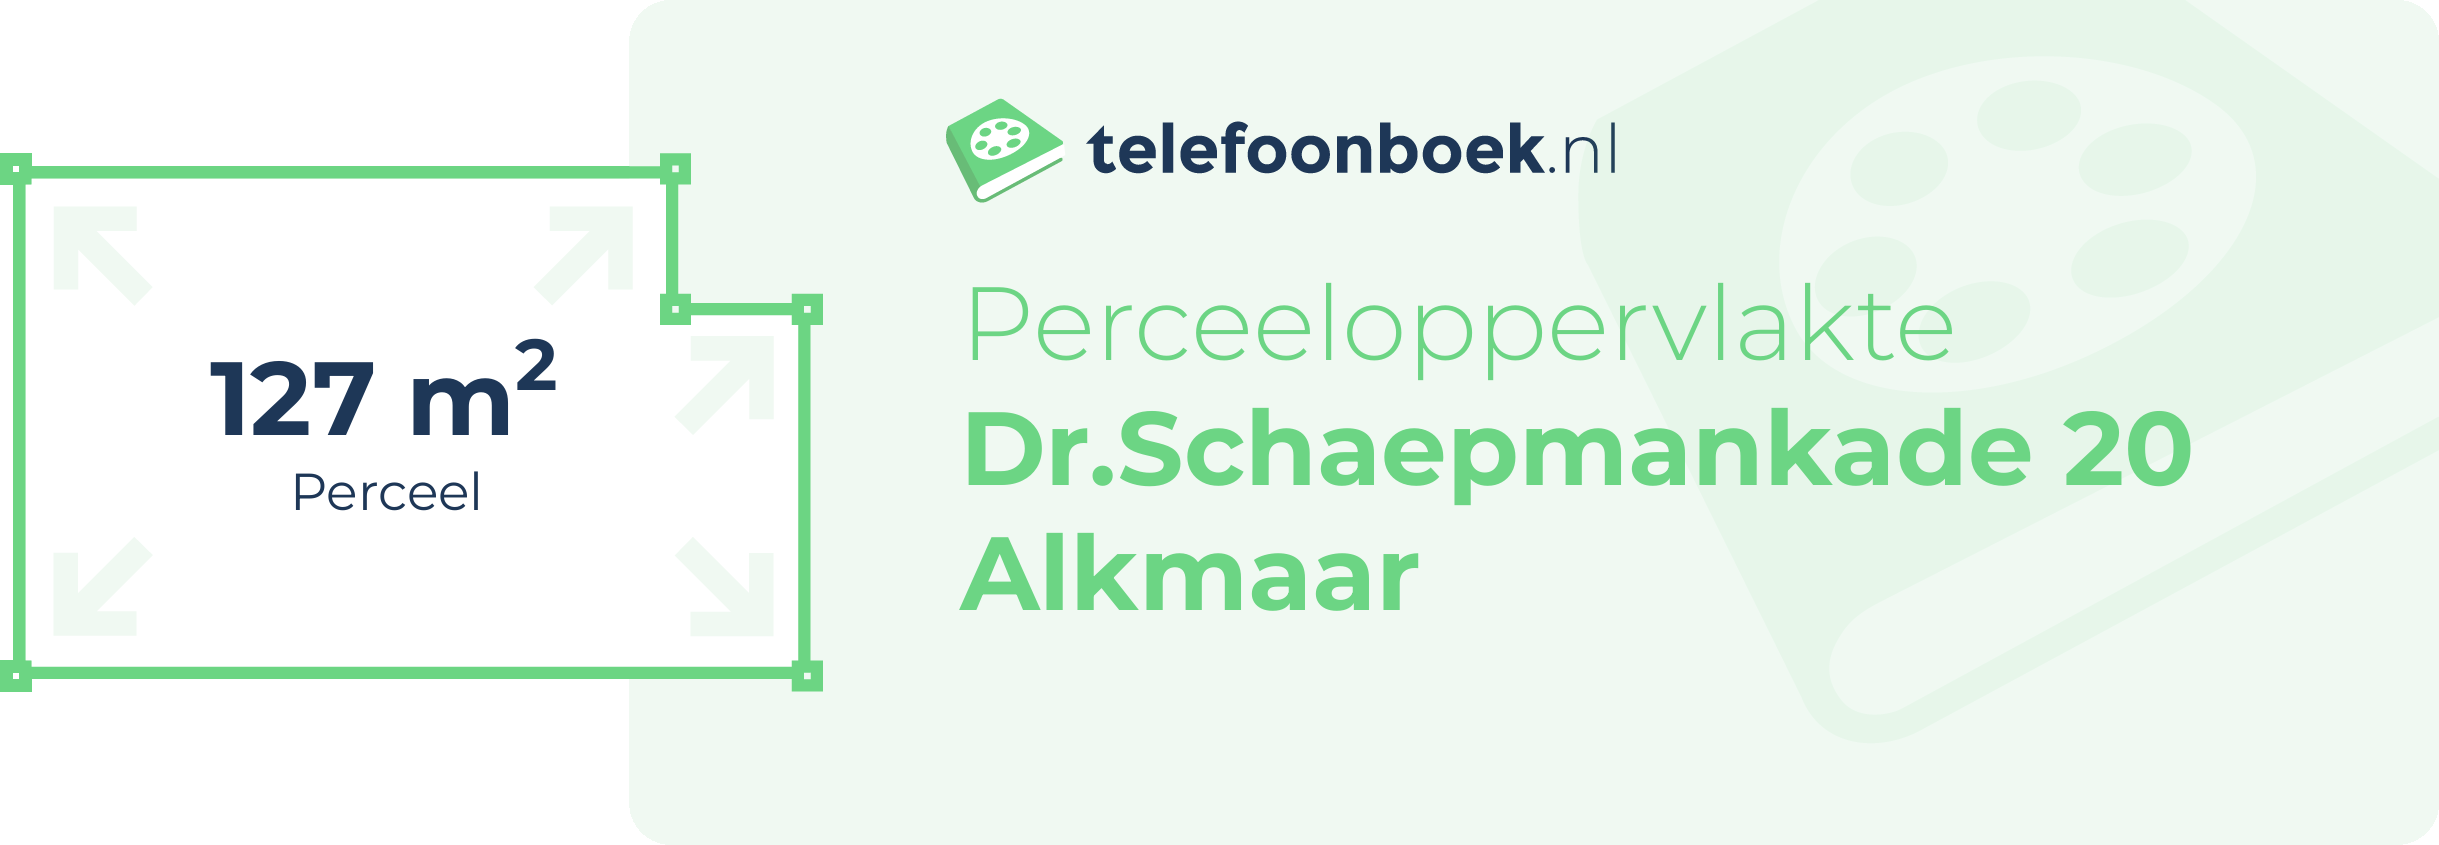 Perceeloppervlakte Dr.Schaepmankade 20 Alkmaar